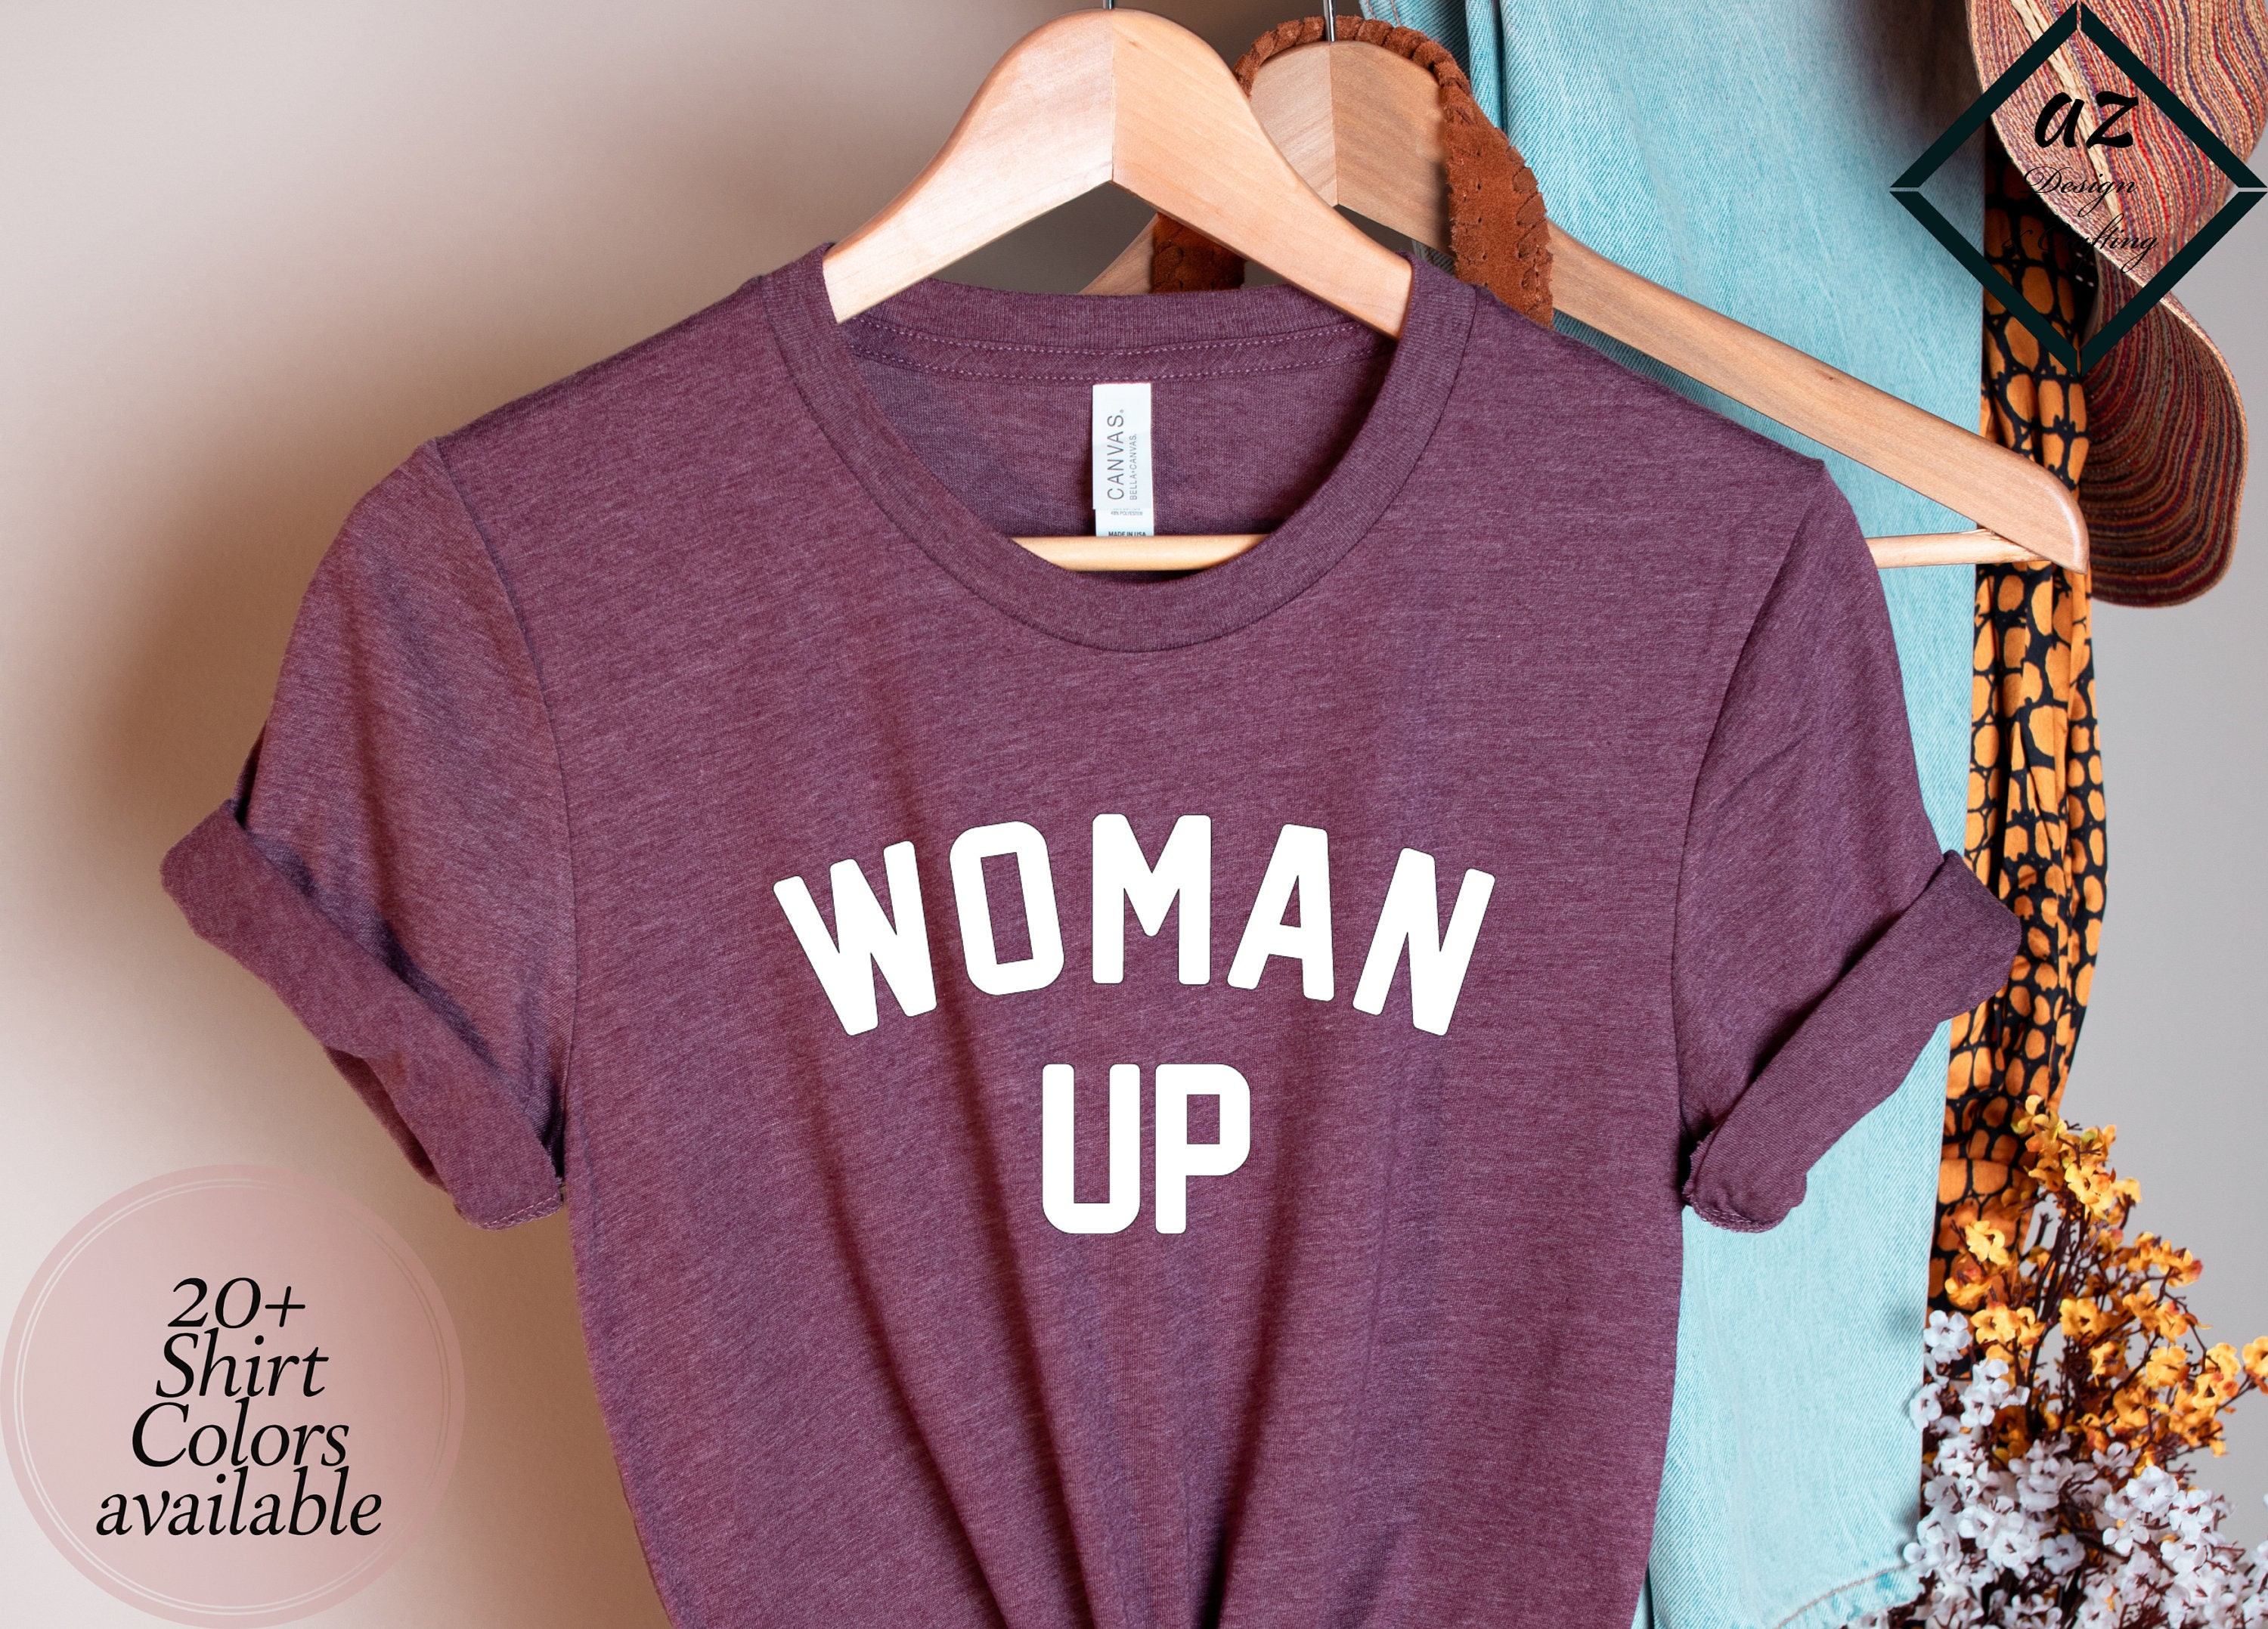 Discover Woman Up Shirt, Inspirational Shirt, Feminist Shirt, Women Empowerment, Women Up, Motivational Shirt, Woman Up